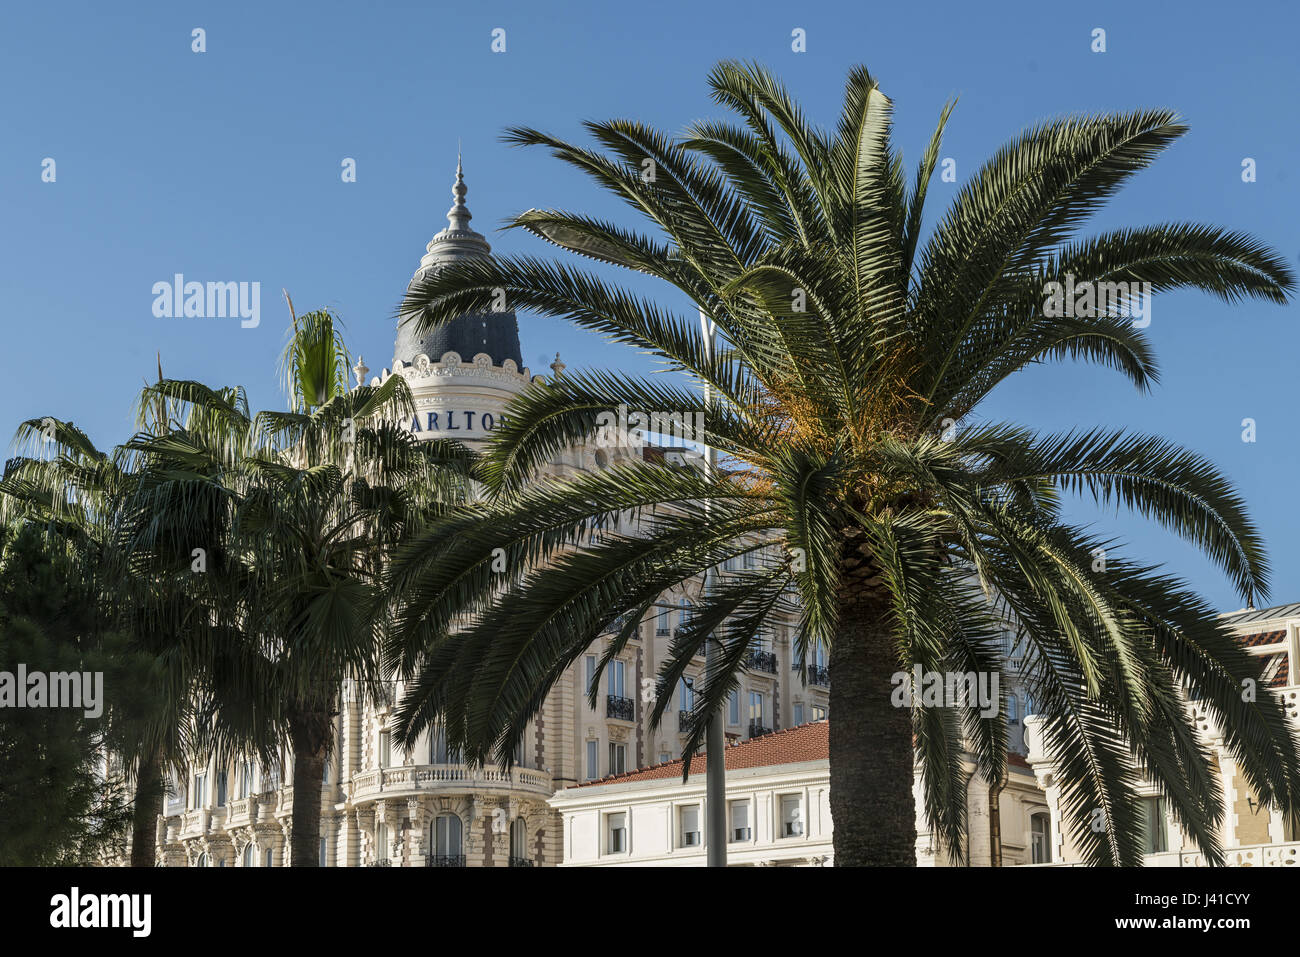 Hotel Carlton, fachada, palmera, Cannes, Cote d'Azur, Francia Foto de stock